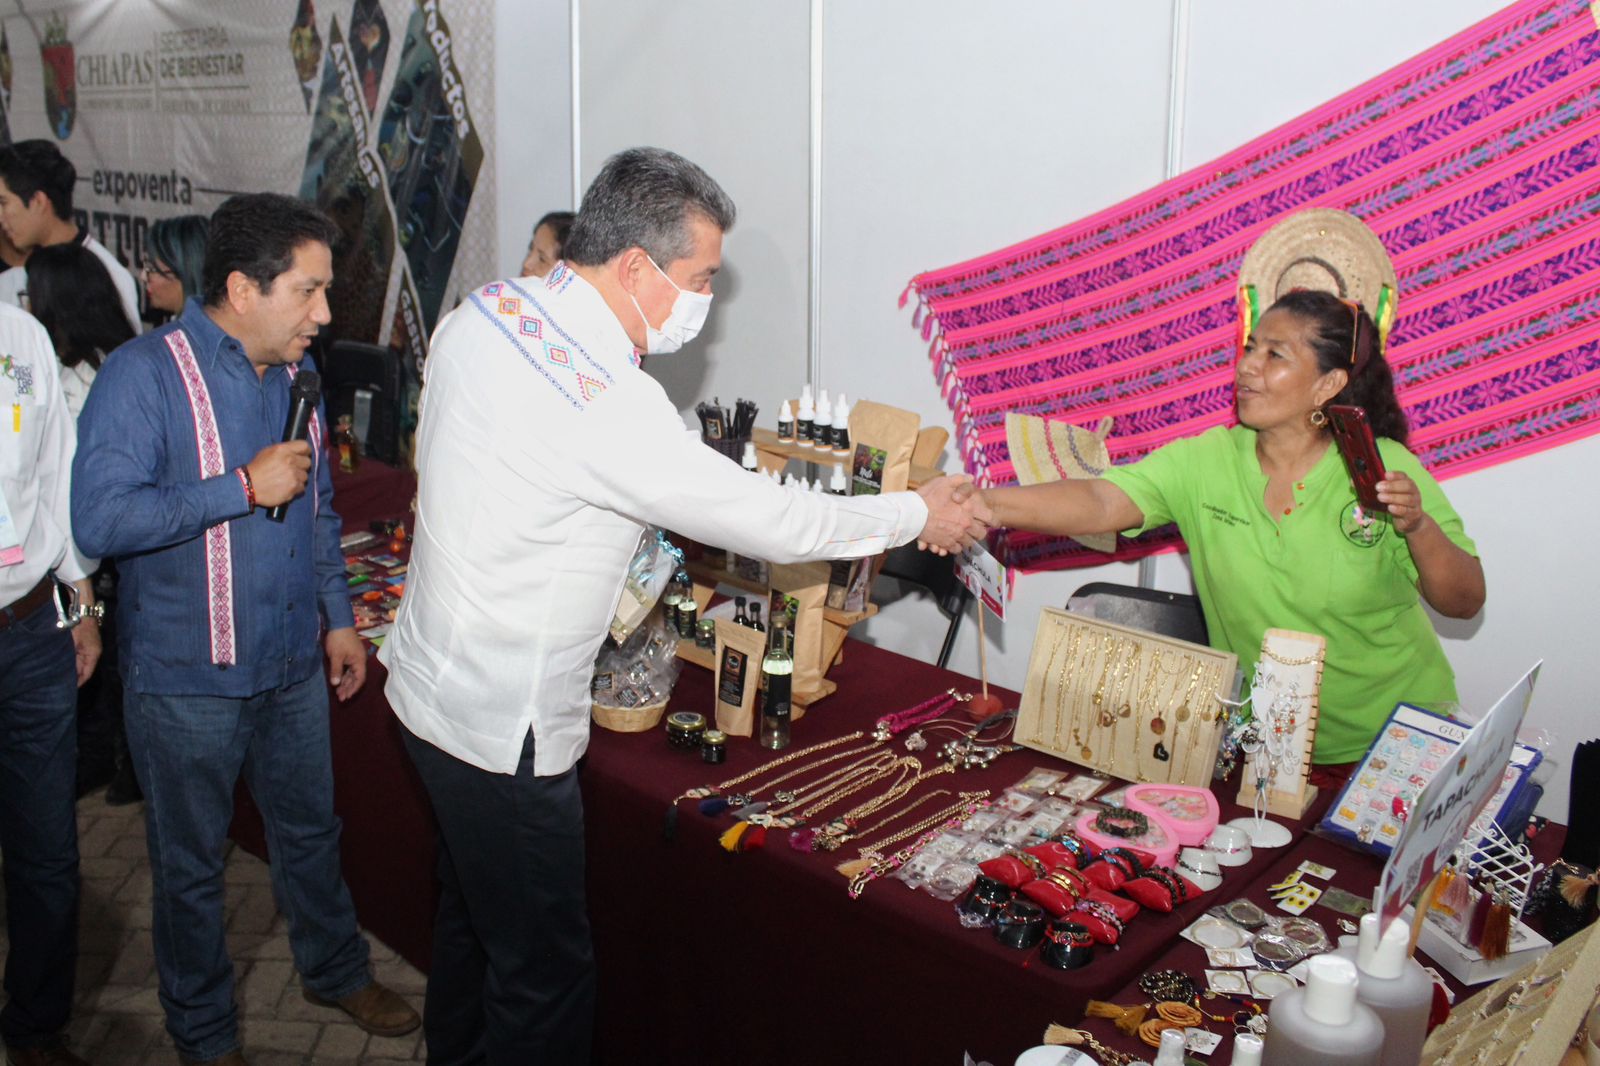 Artesanos presentes en expo feria en Tapachula